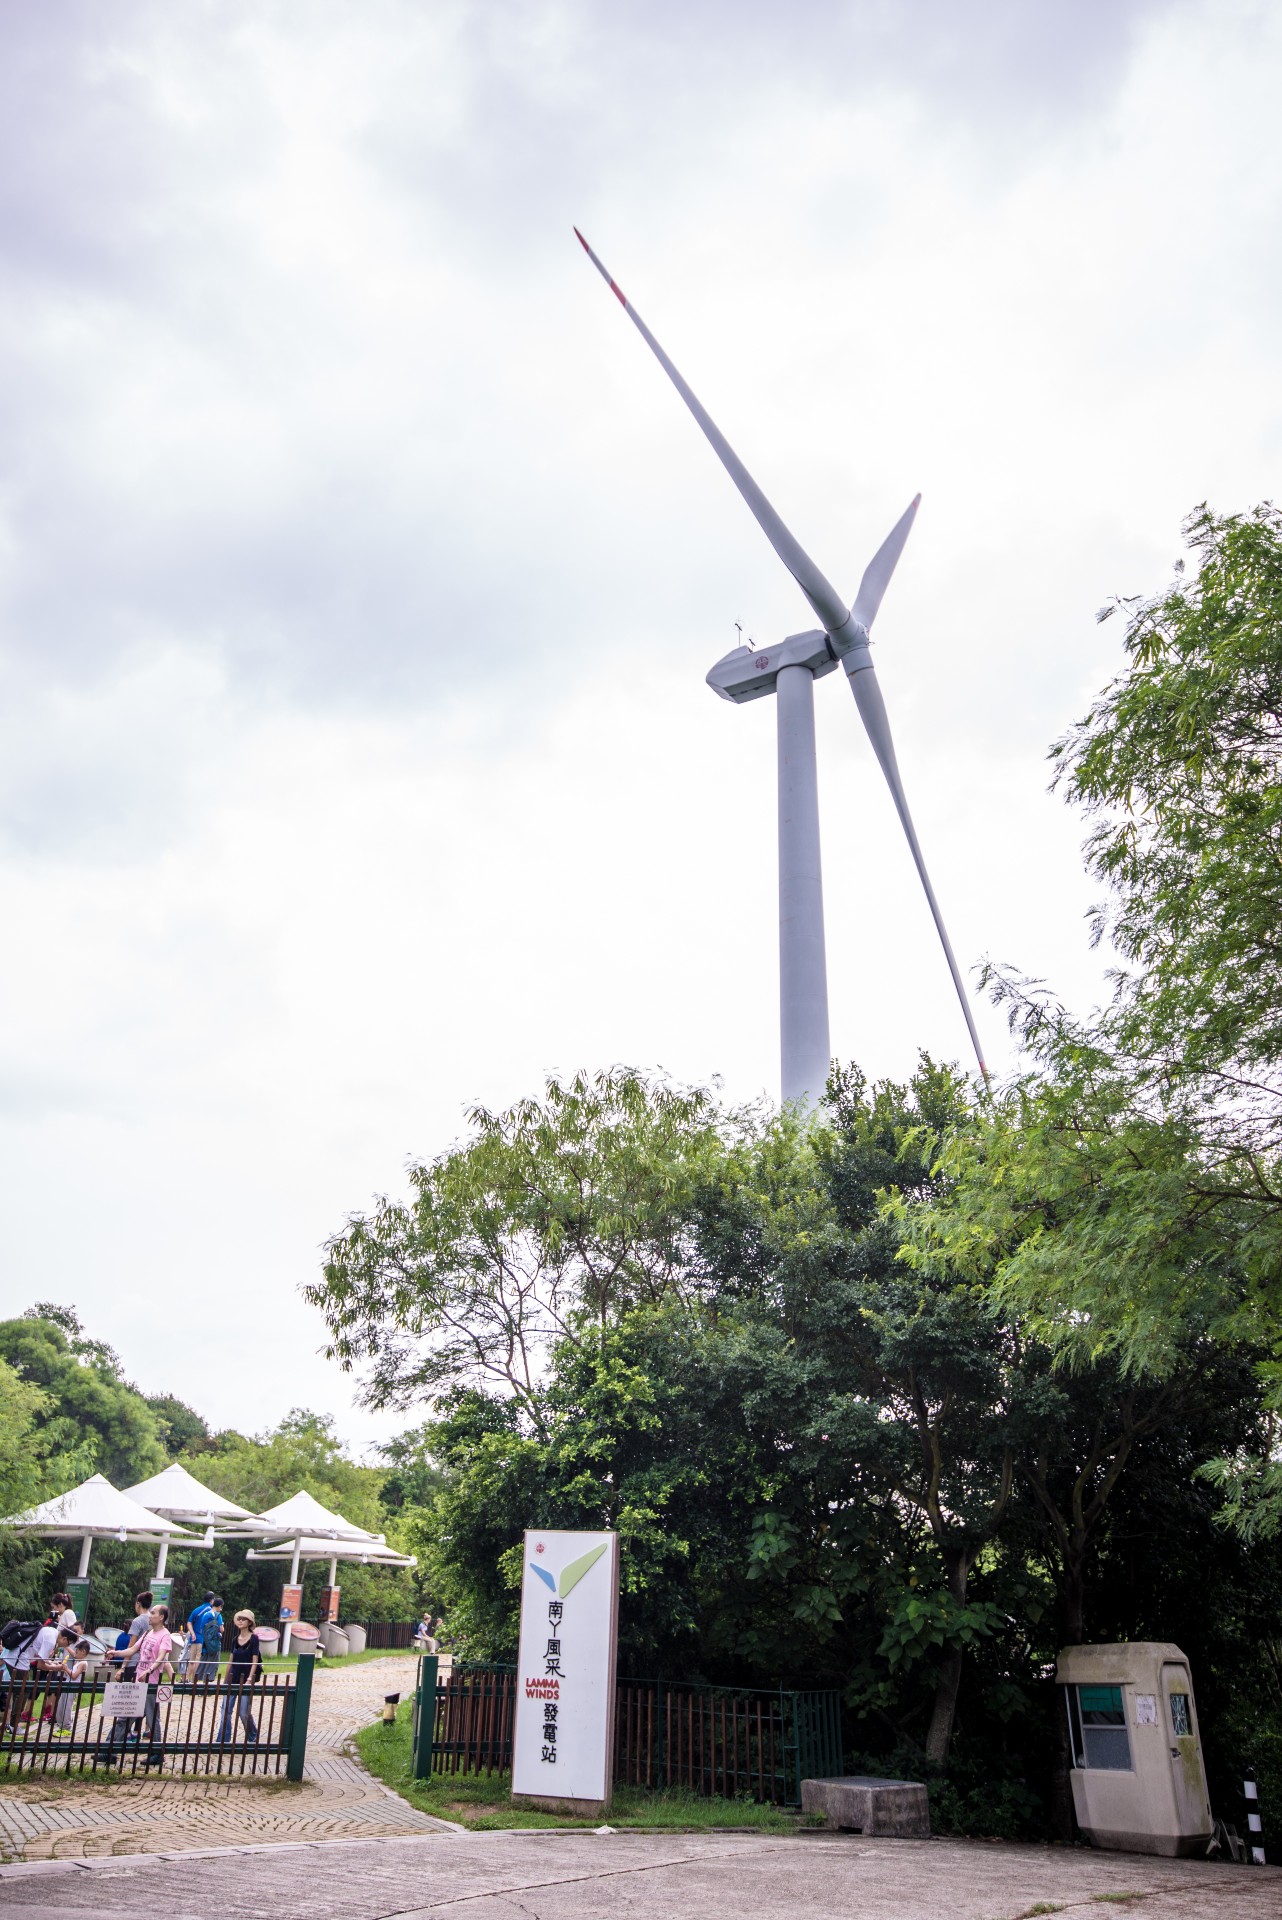 港燈在佔地2,500平方米的風力發電站設立展覽場地，介紹可再生能源的資訊及應用情況。（圖片來源：Shutterstock）